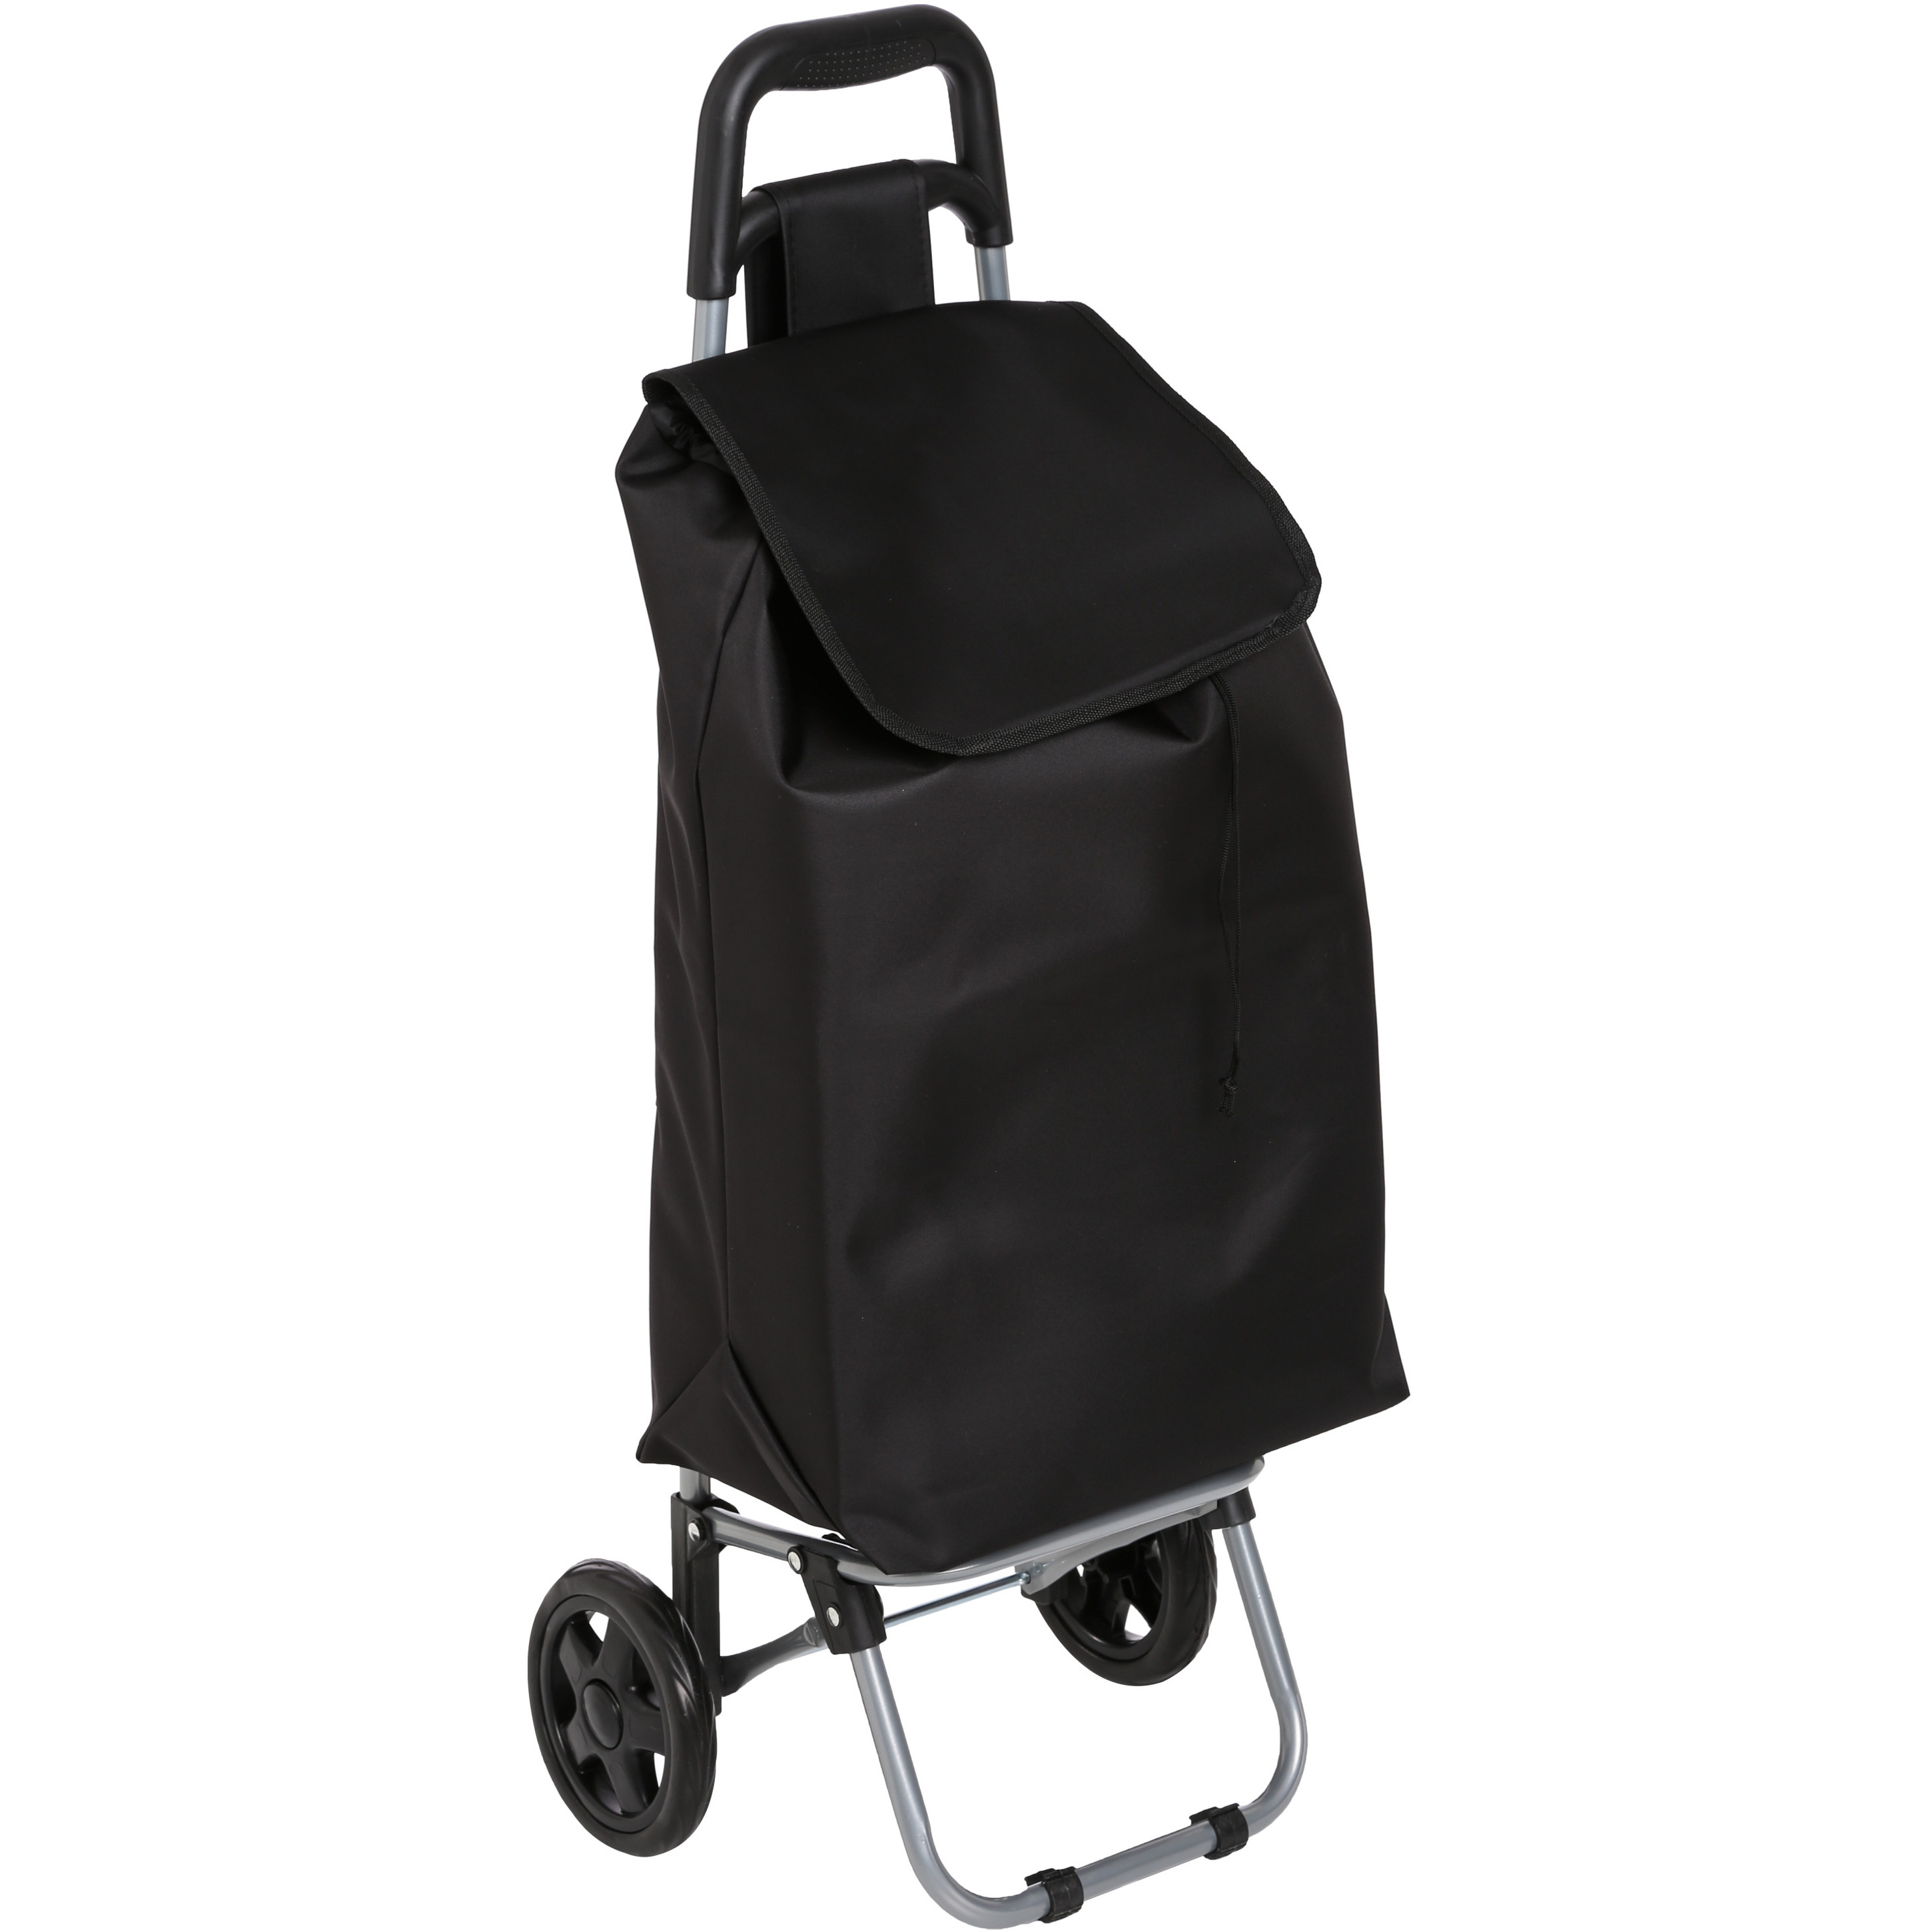 5Five Boodschappen trolley tas inhoud 30 liter zwart met wielen Boodschappentas -Â 35 x 28 x 92 cm